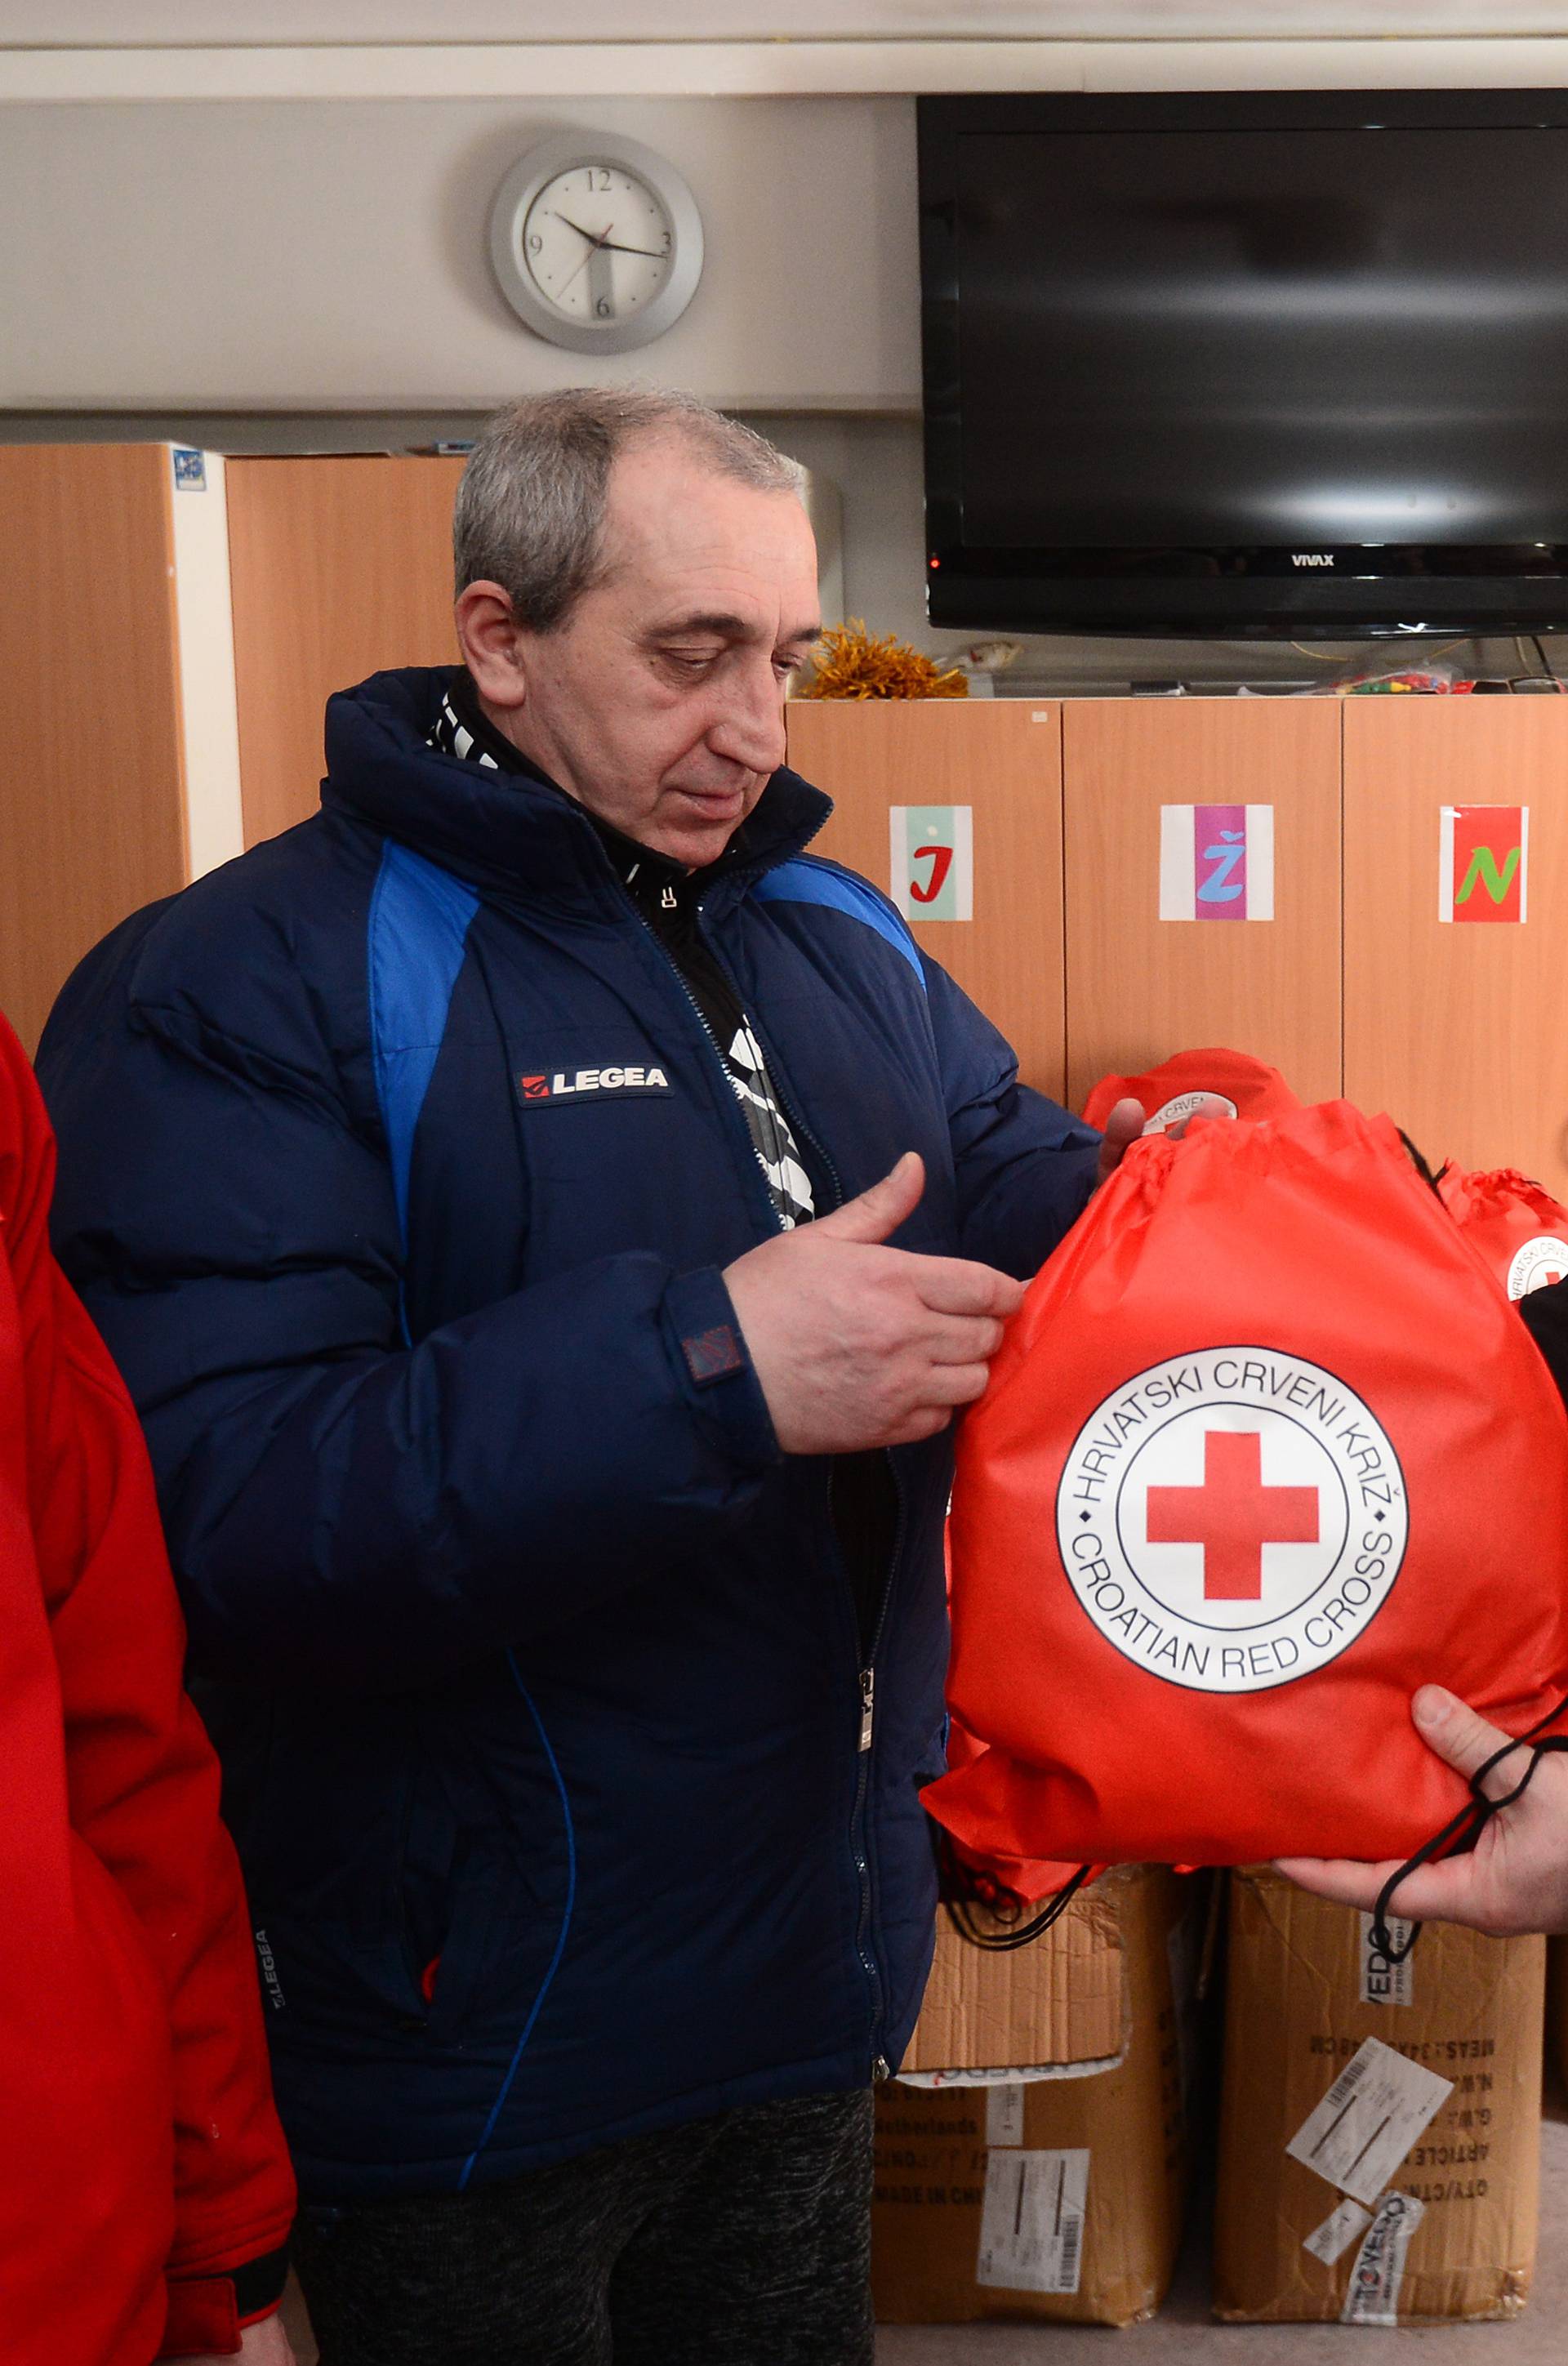 Crveni križ beskućnicima dijeli ruksake s kapama, šalovima...